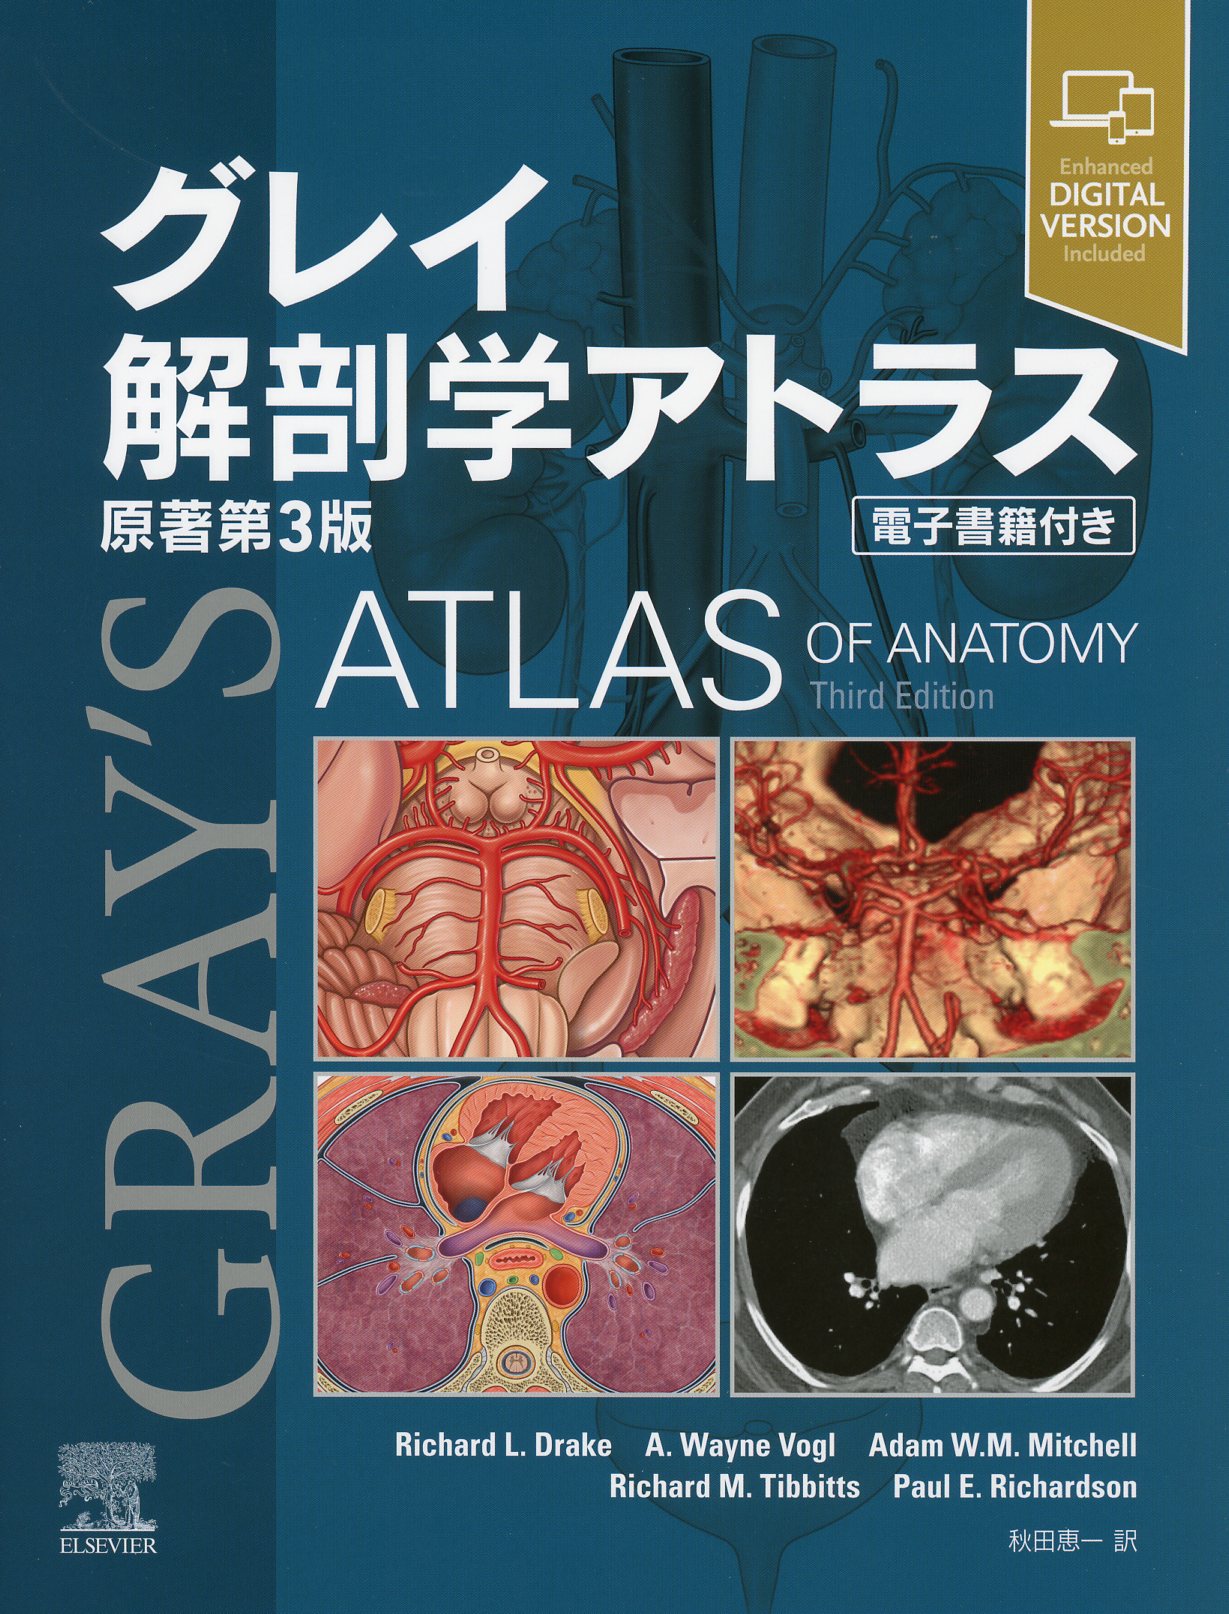 グレイ解剖学 原著第4版 電子書籍付(日本語・英語) 大型本健康/医学